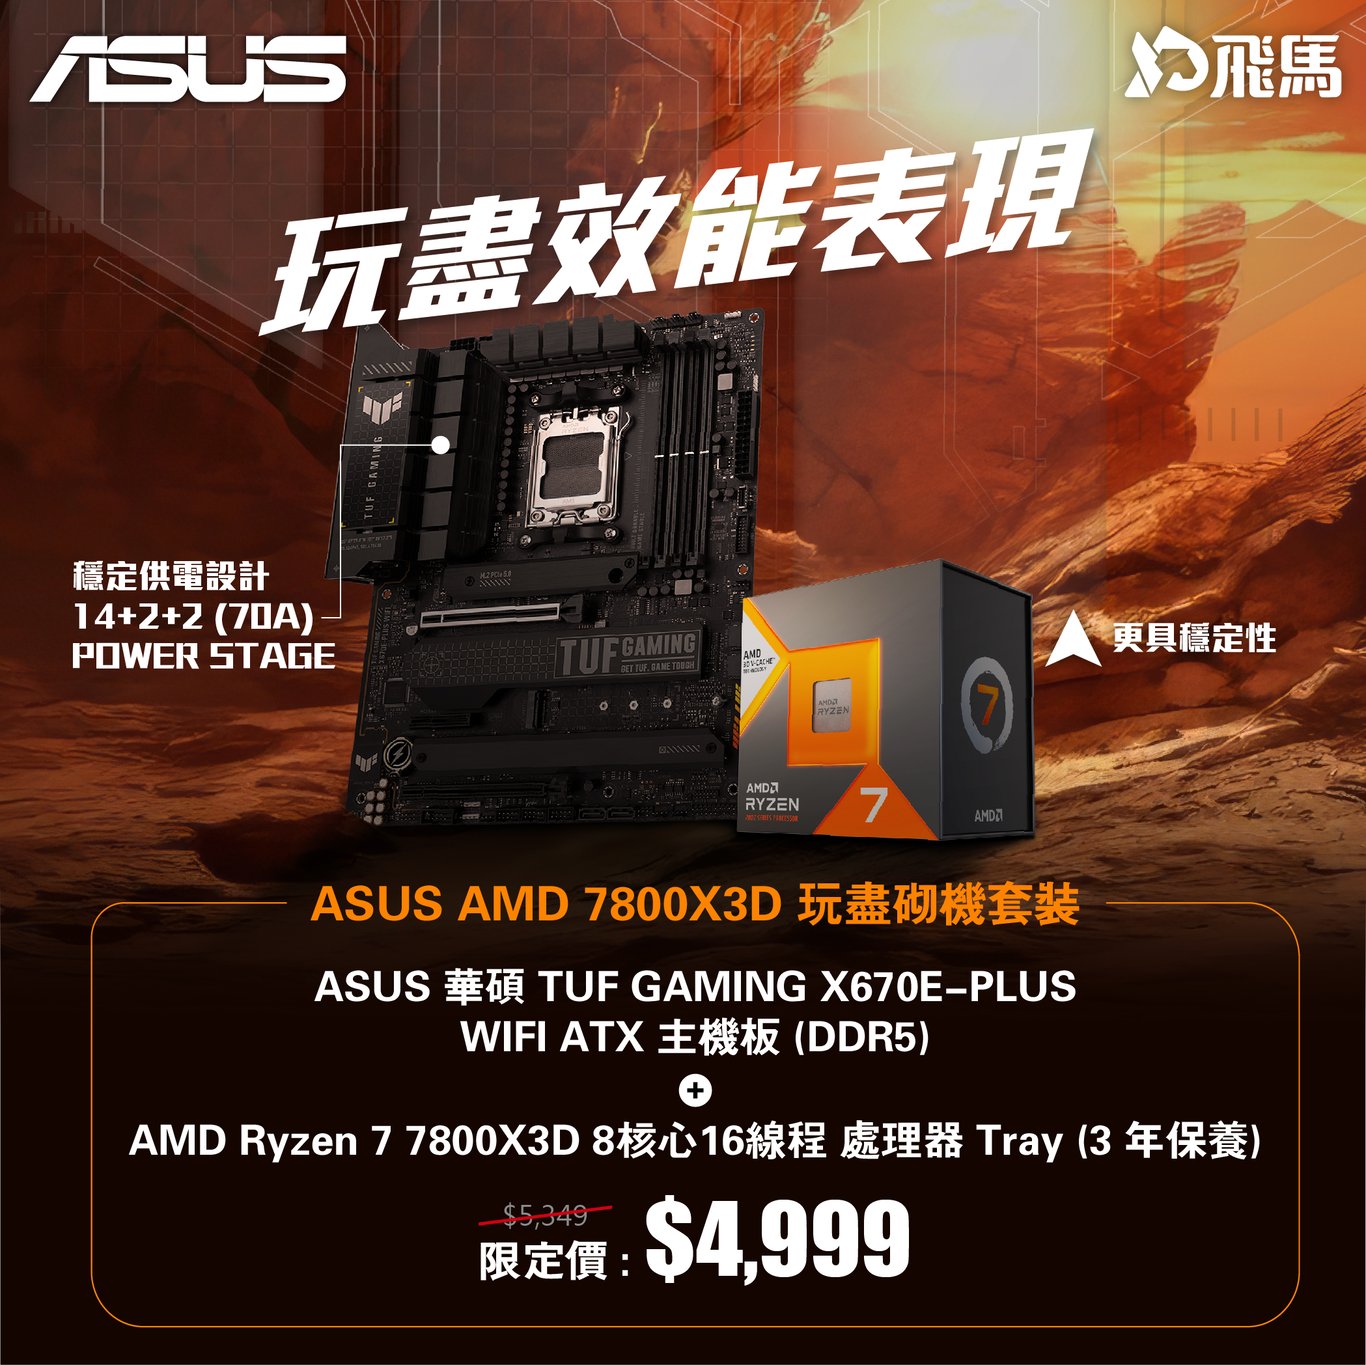 ASUS AMD 7800X3D 玩盡砌機套裝